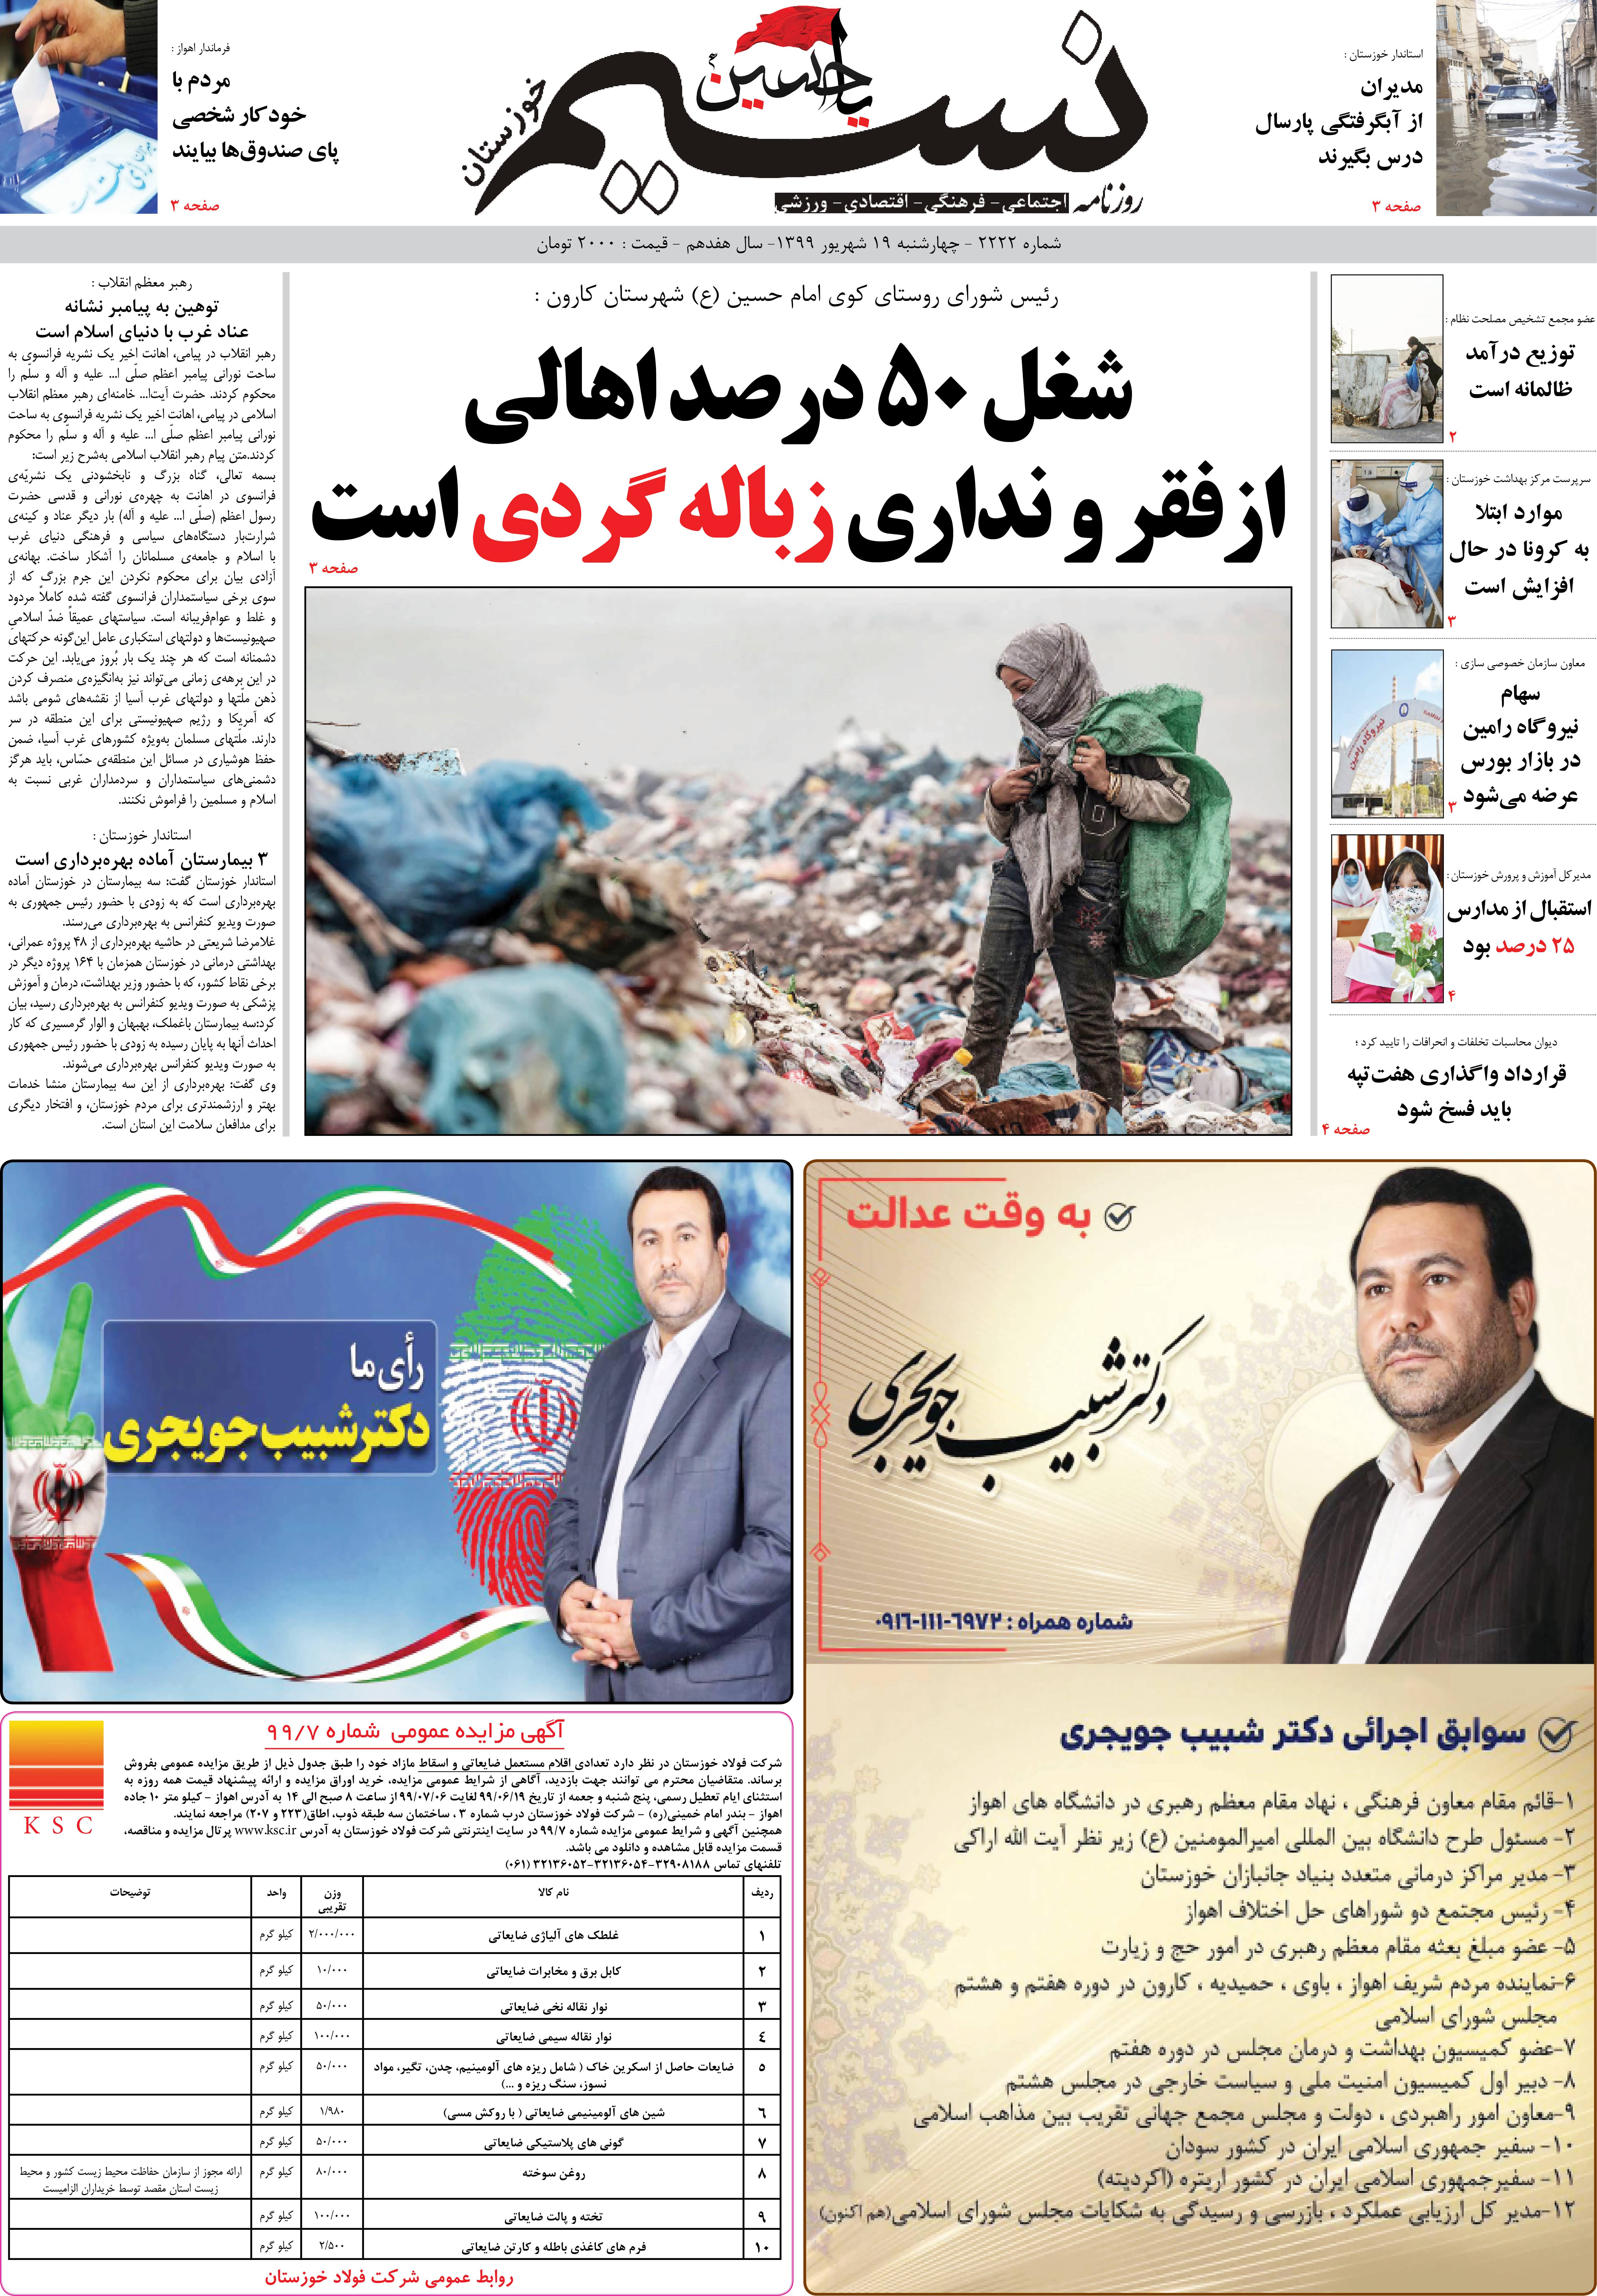 صفحه اصلی روزنامه نسیم شماره 2222 